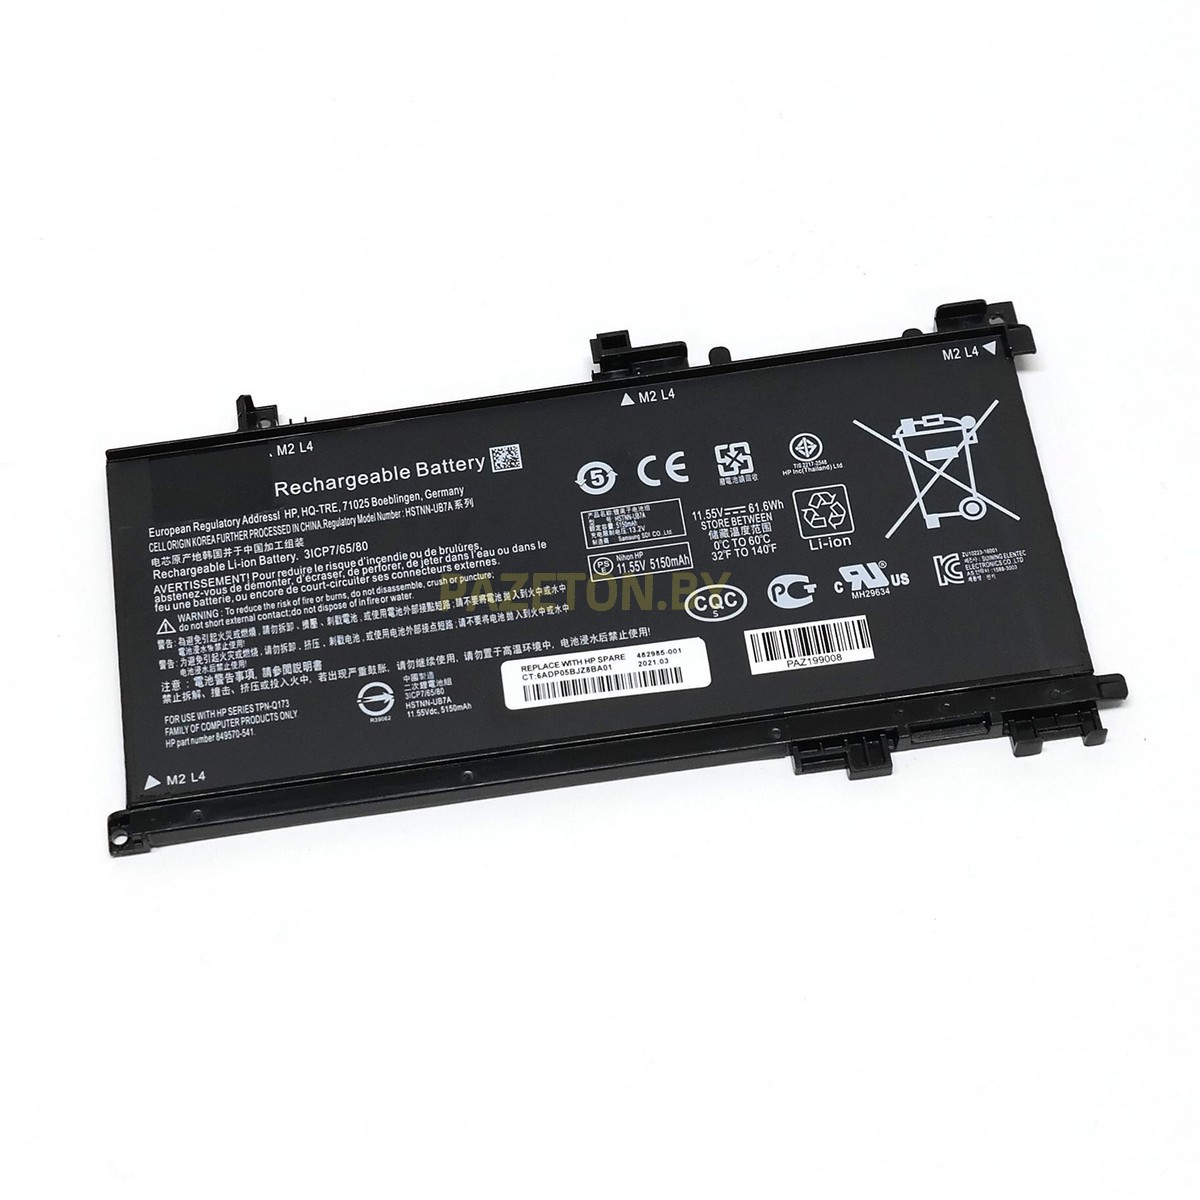 Батарея TE03XL для HP Omen 15-AX HP Pavilion 15-BC 11.55V 61.6Wh и других моделей ноутбуков